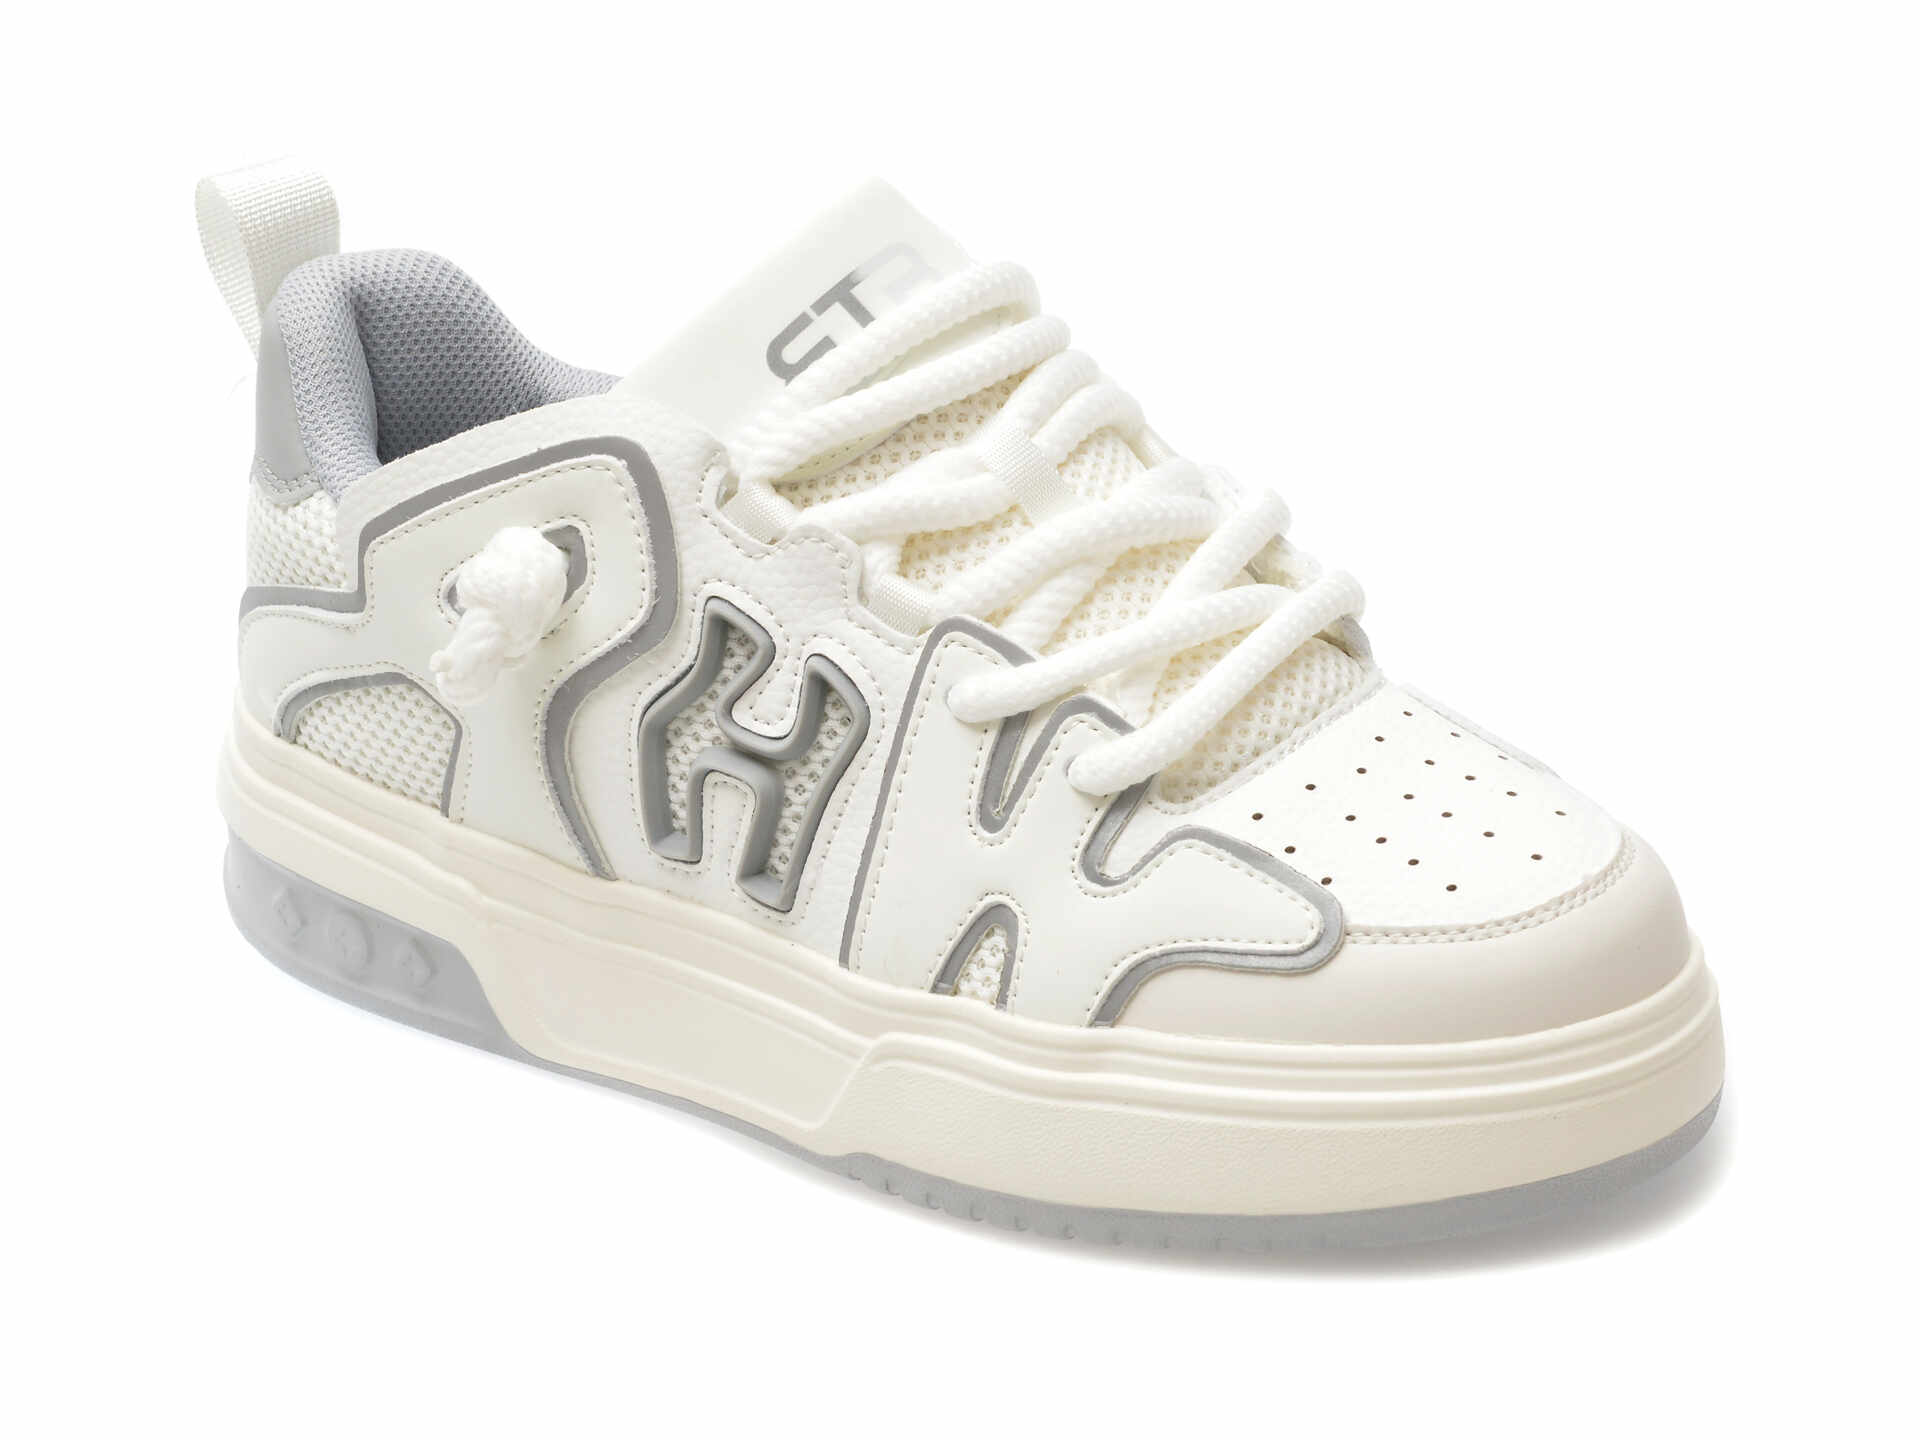 Pantofi sport BITE THE BULLET albi, 5697, din piele ecologica